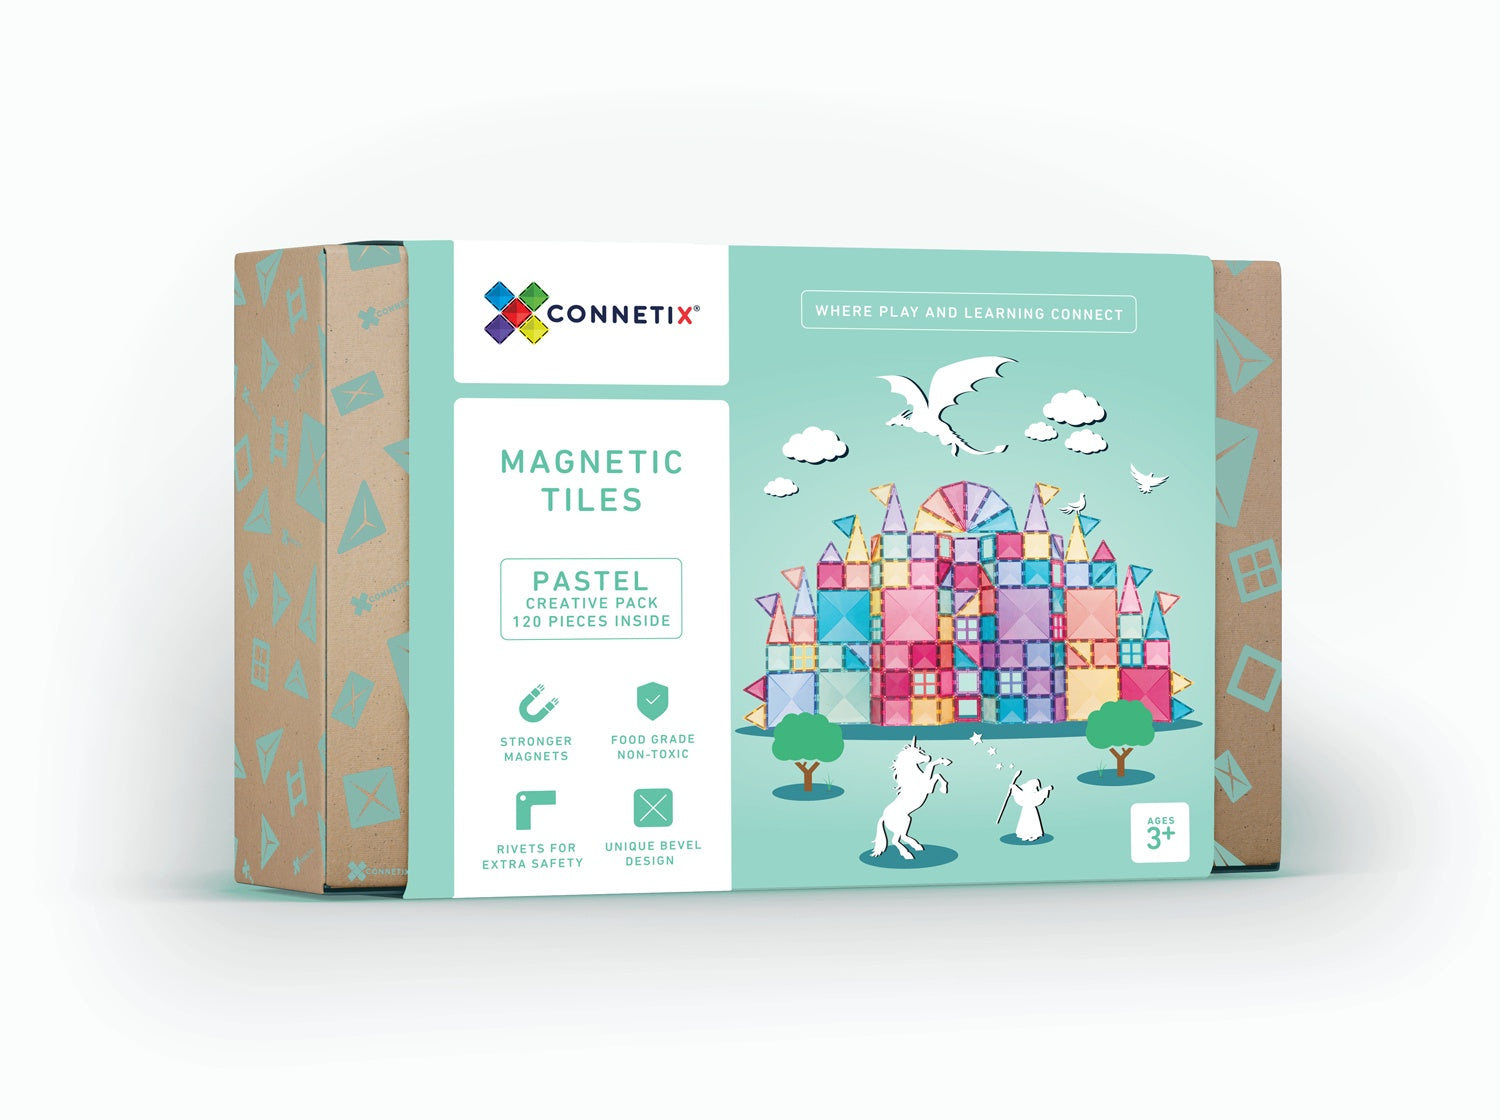 CONNETIX Magnetic Tiles - Pastel Creative Pack 120 Piece